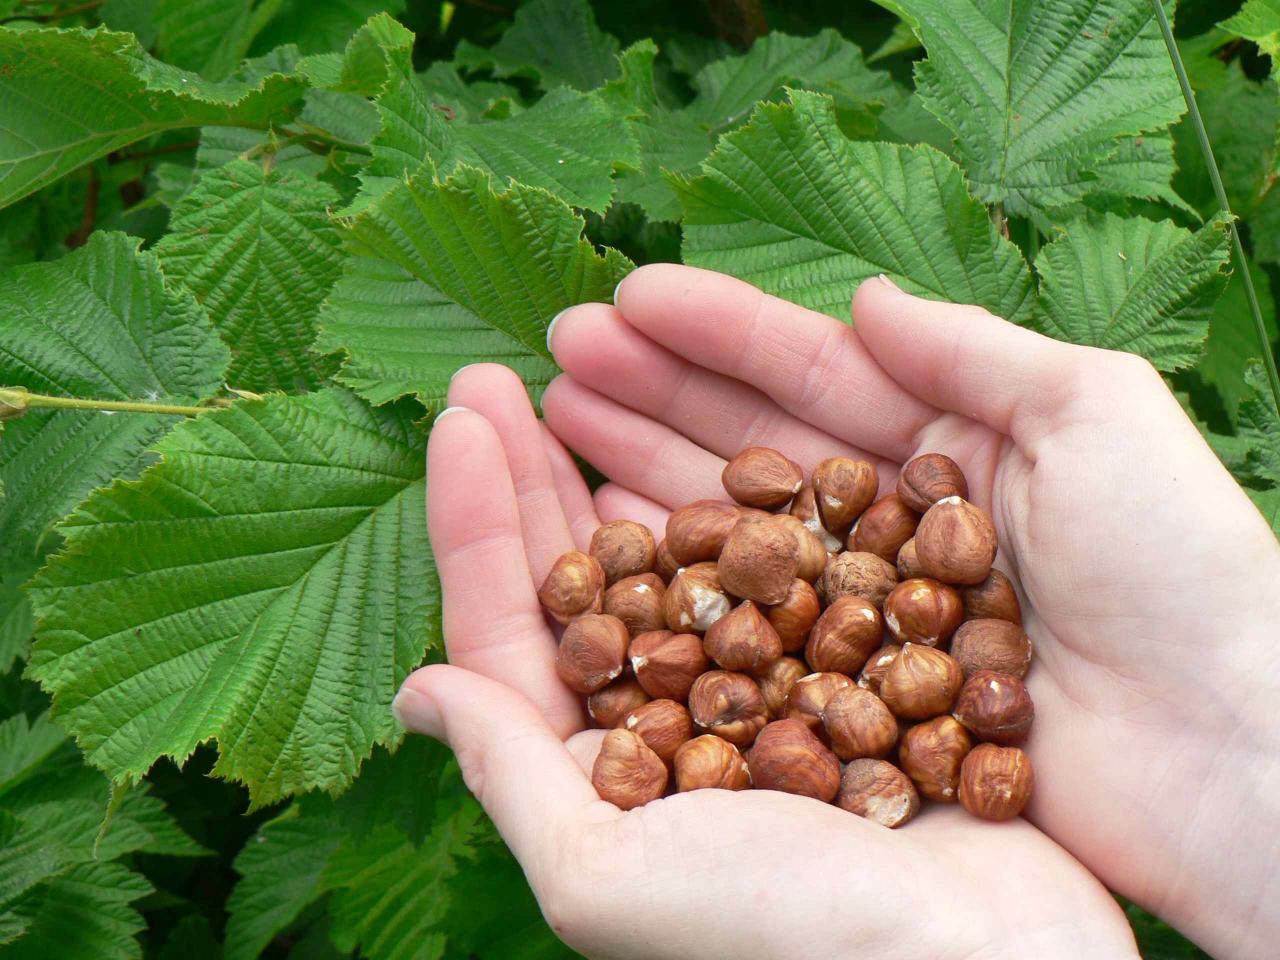 Italy’s Ferrero may assist Azerbaijan in expanding hazelnut production